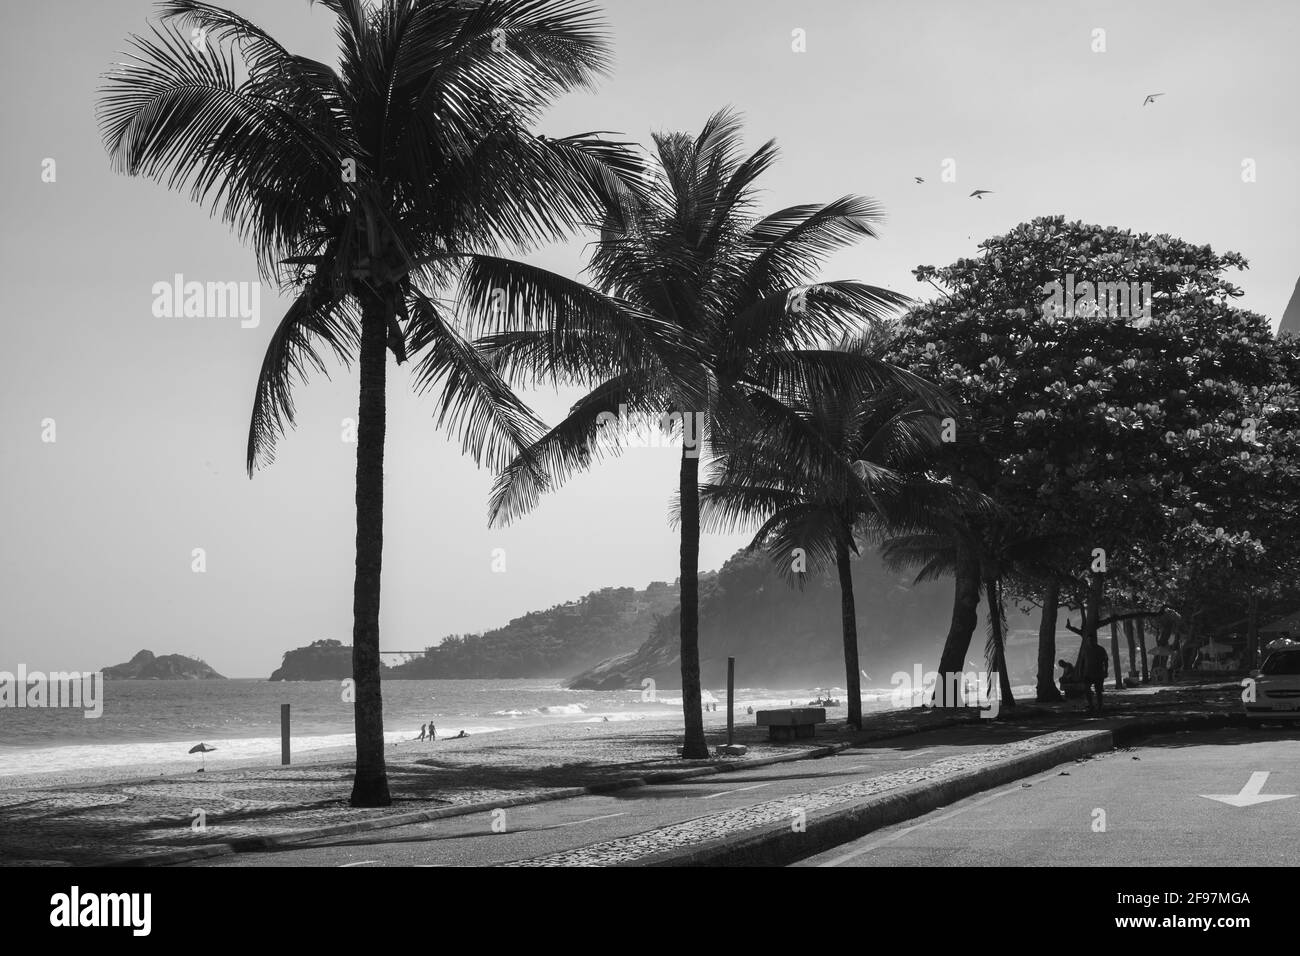 Leblon lungomare vicino a Ipanema con palme e Morro dois Iramaos (due fratelli montagna) in background a Rio de Janeiro, Brasile. Girato in bianco e nero con Leica M10 Foto Stock